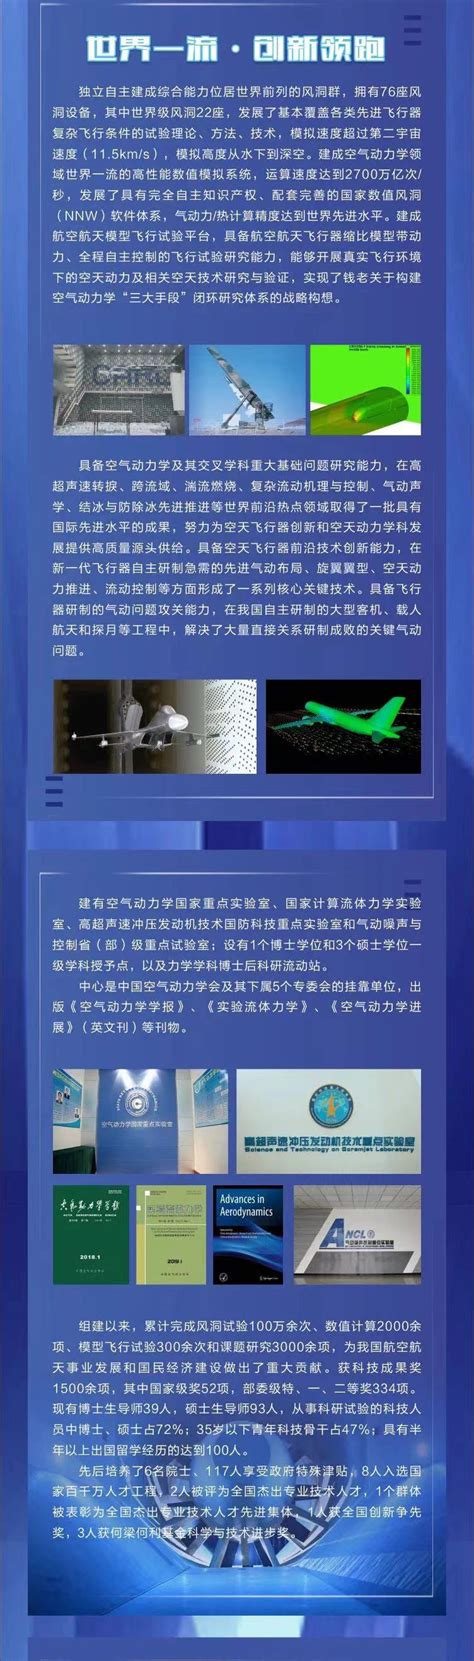 西北工业大学-中国空气动力研究与发展中心双边学术研讨会顺利召开-视窗-西北工业大学新闻网